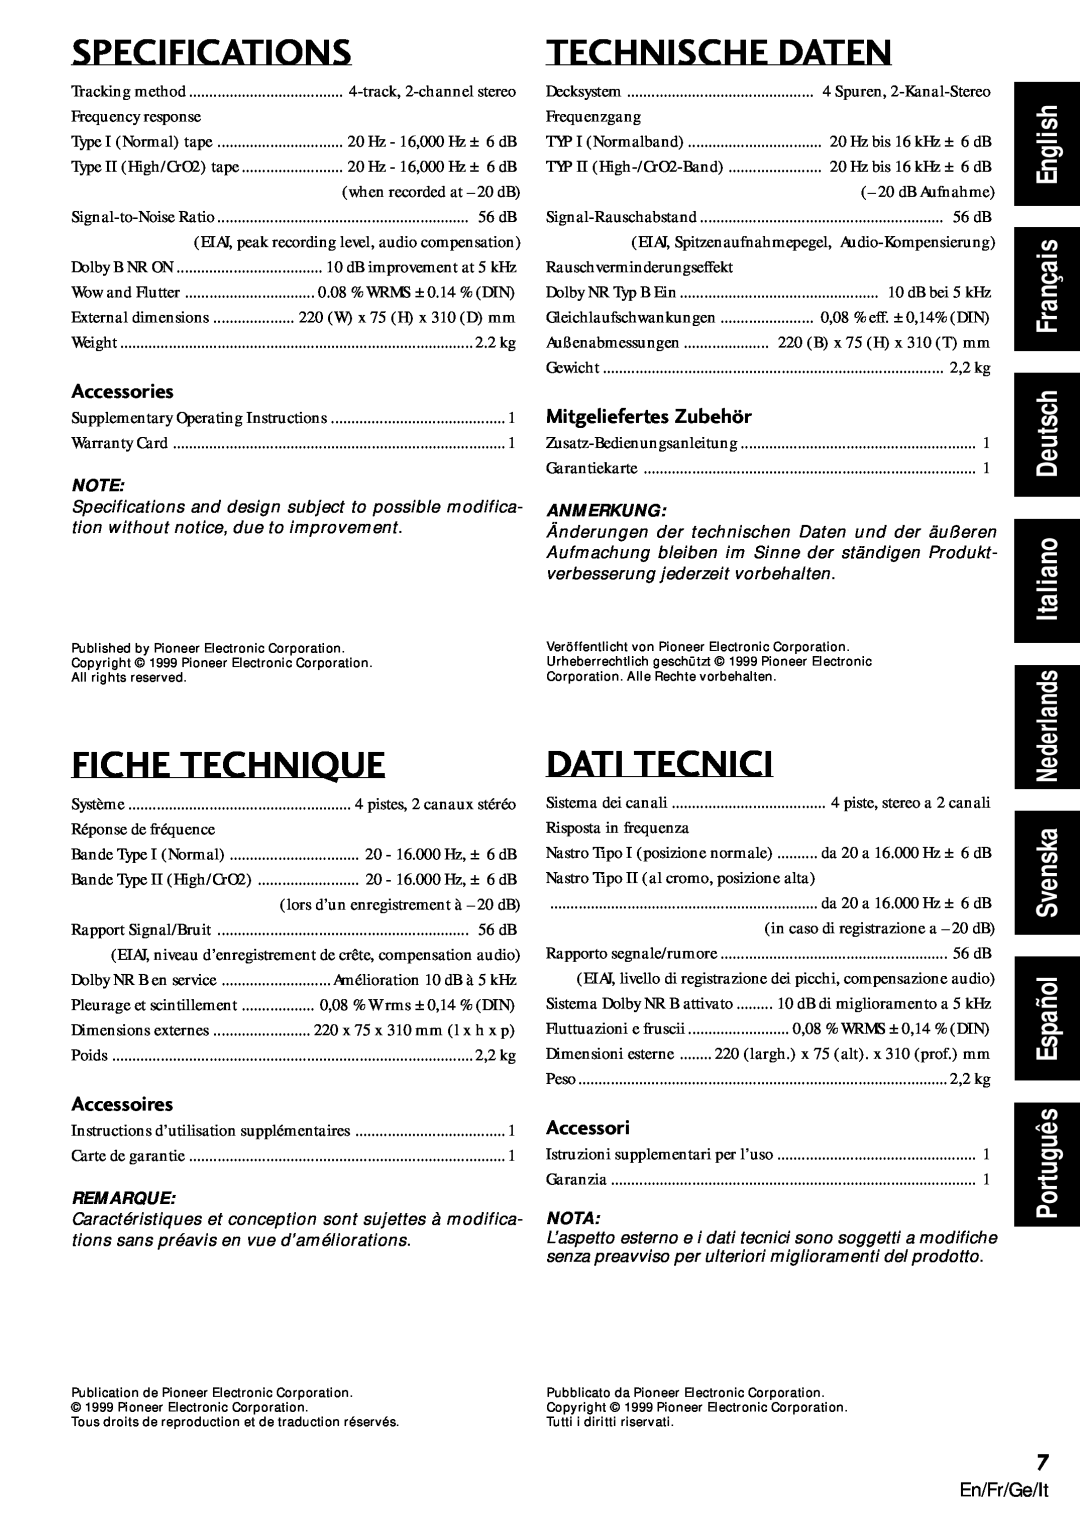 Pioneer CT-L77 Specifications, Technische Daten, Fiche Technique, Dati Tecnici, Français English, Italiano Deutsch 